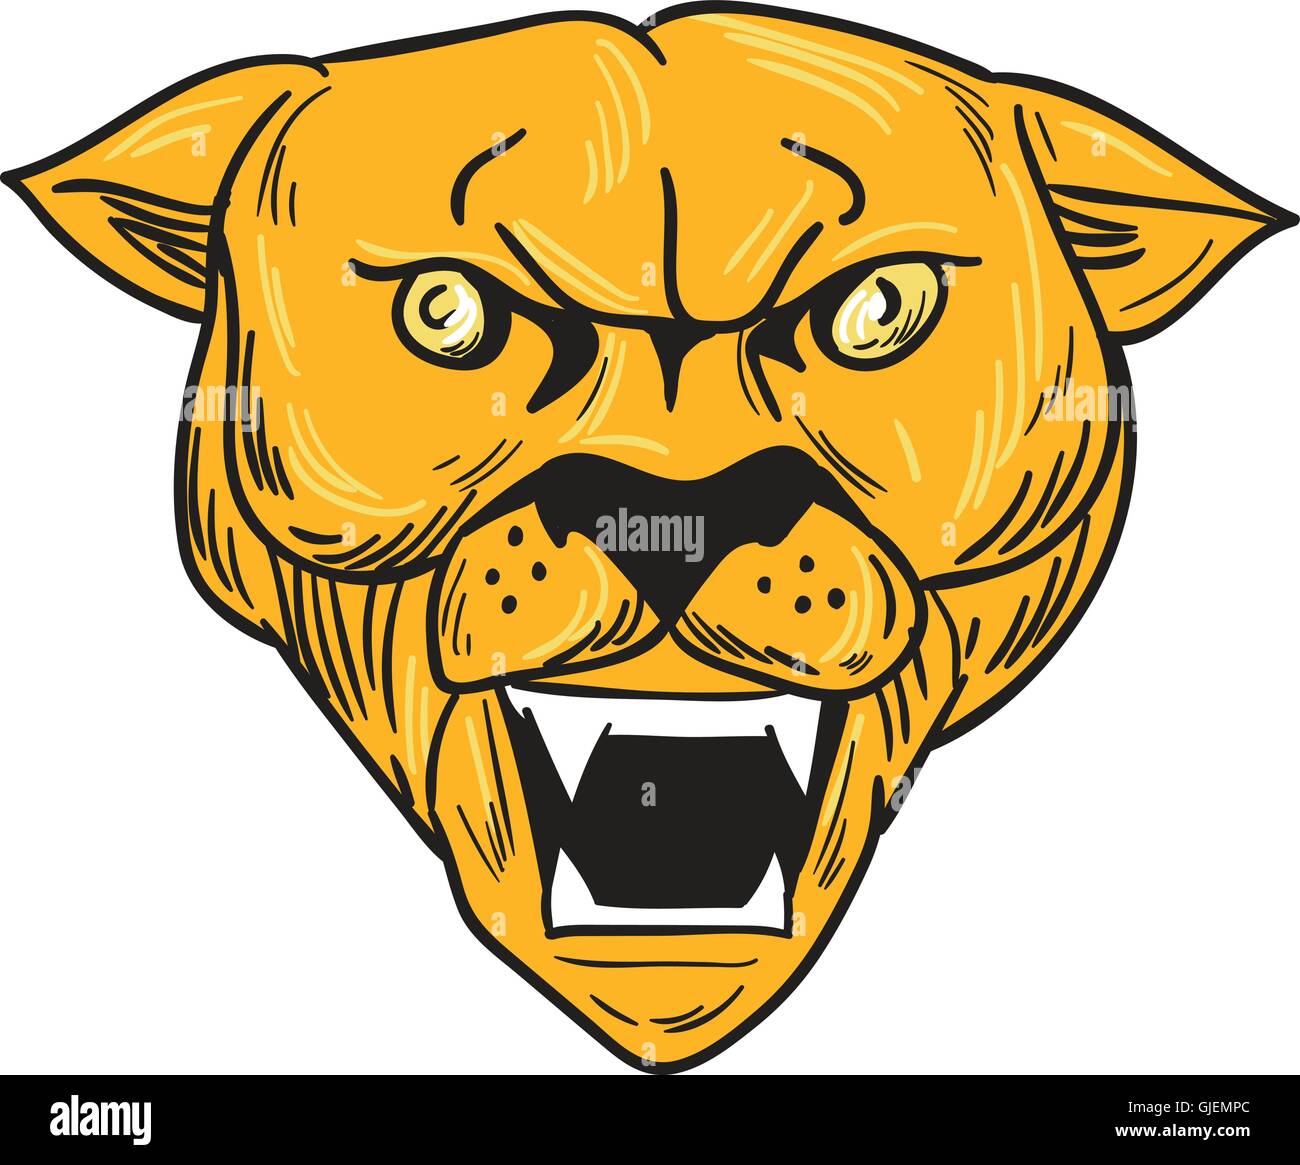 Croquis dessin illustration style de la colère du cougar mountain lion head montrant crocs vue de l'avant ensemble isolées sur fond blanc. Illustration de Vecteur